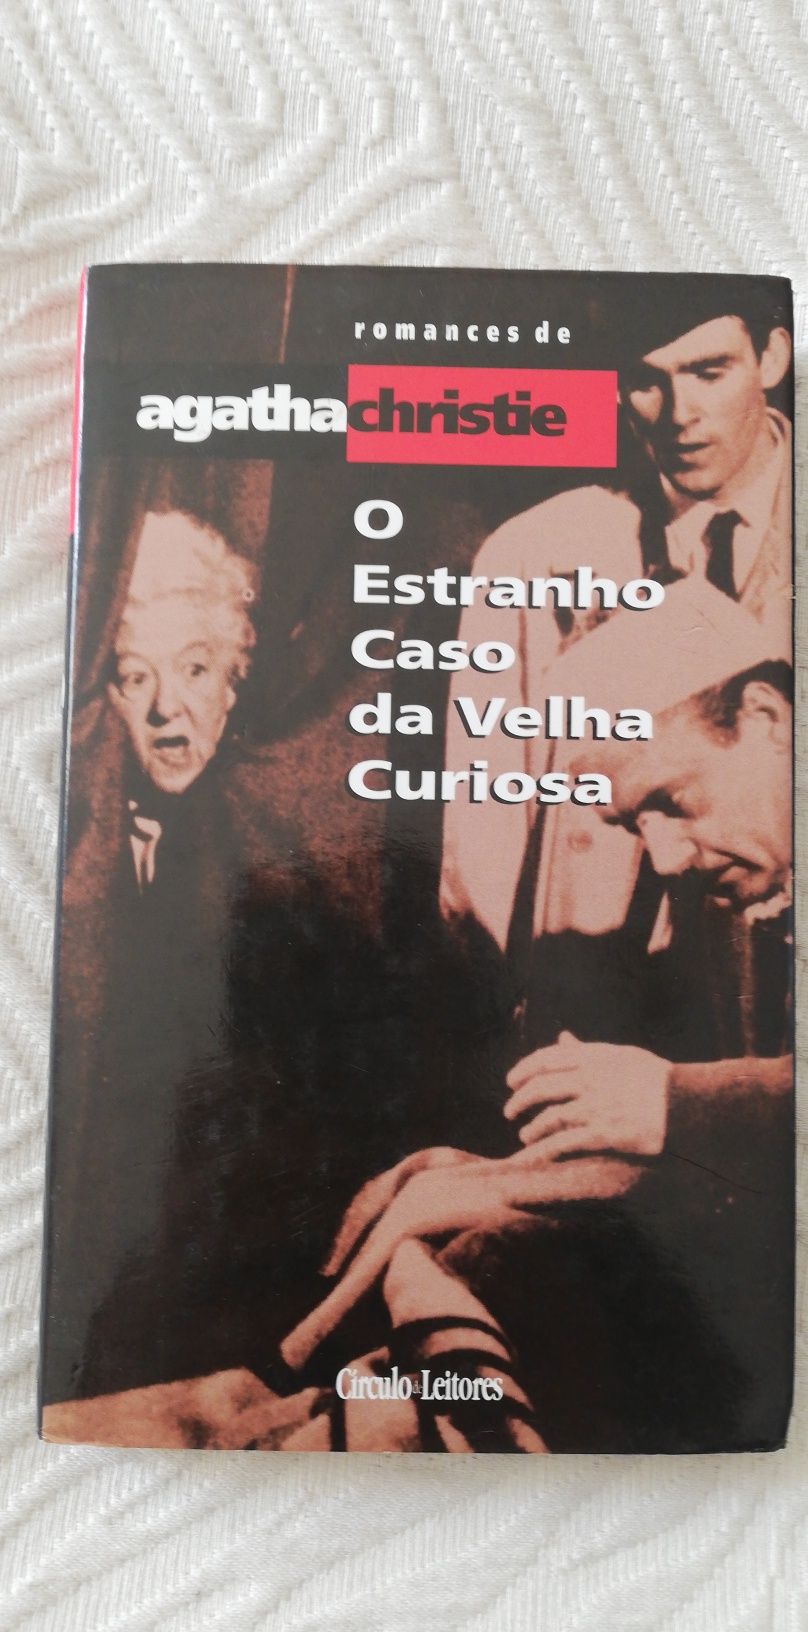 O estranho caso da velha curiosa, de Agatha Christie